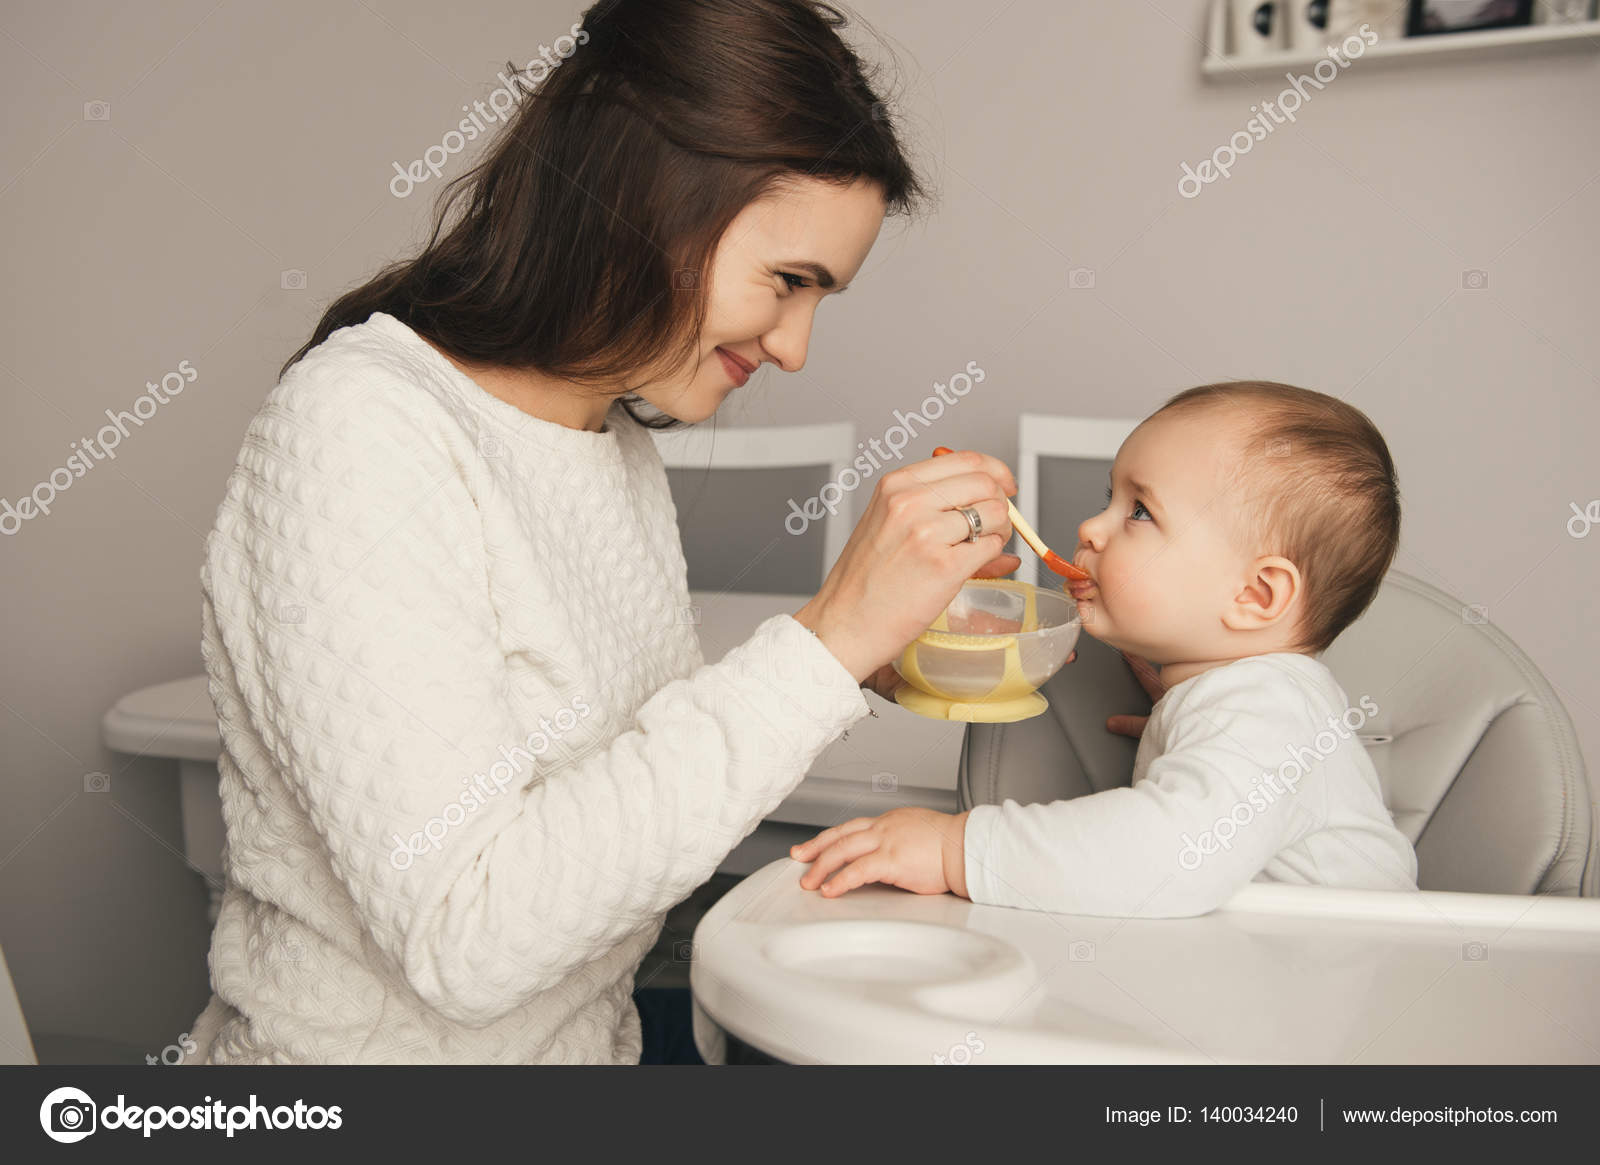 Mom feeding her baby girl by 140034240